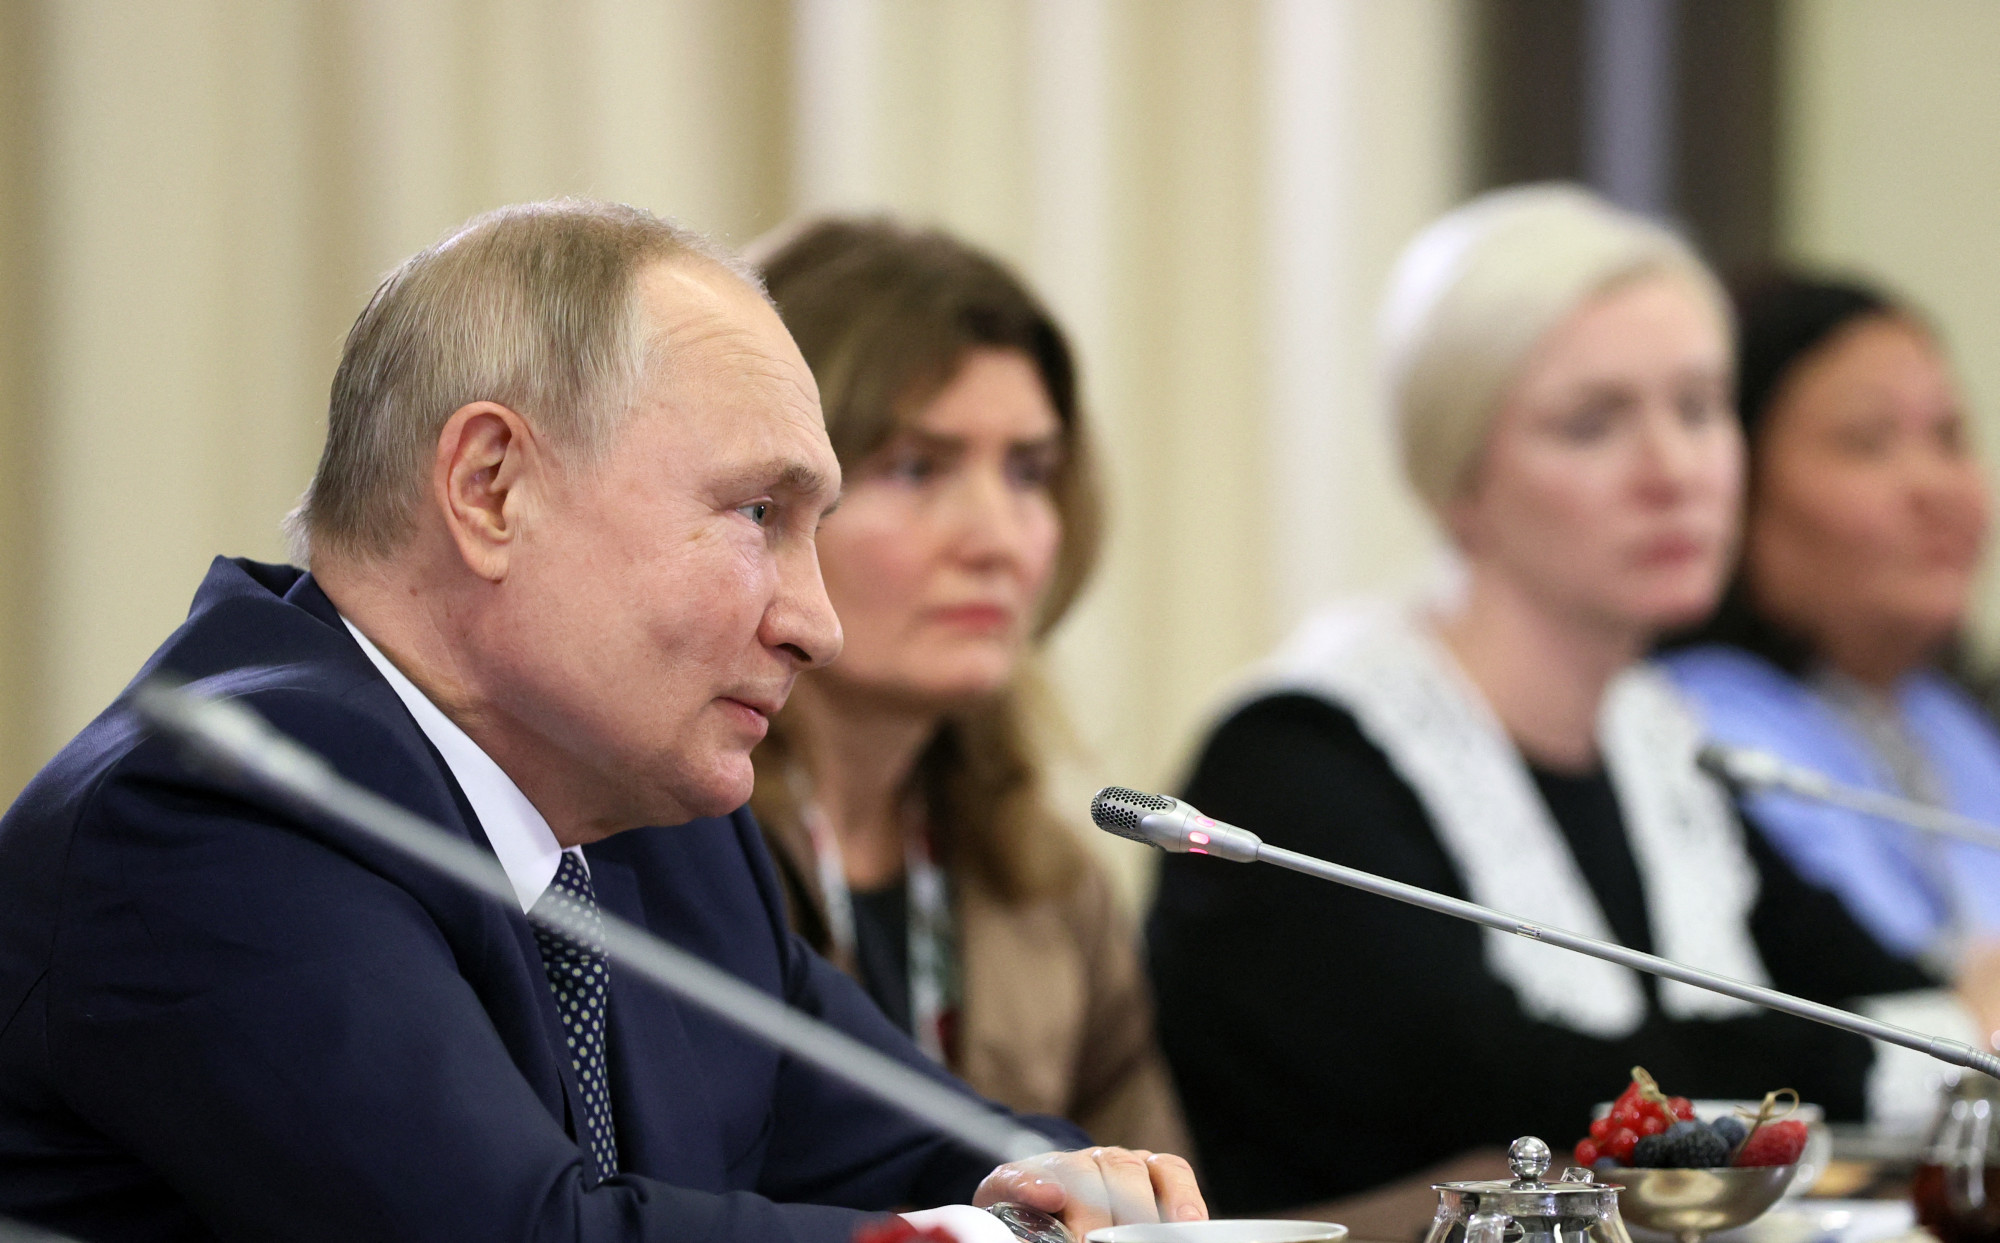 Rendeztek Putyinnak egy találkozót orosz katonaanyák jól megválogatott csoportjával